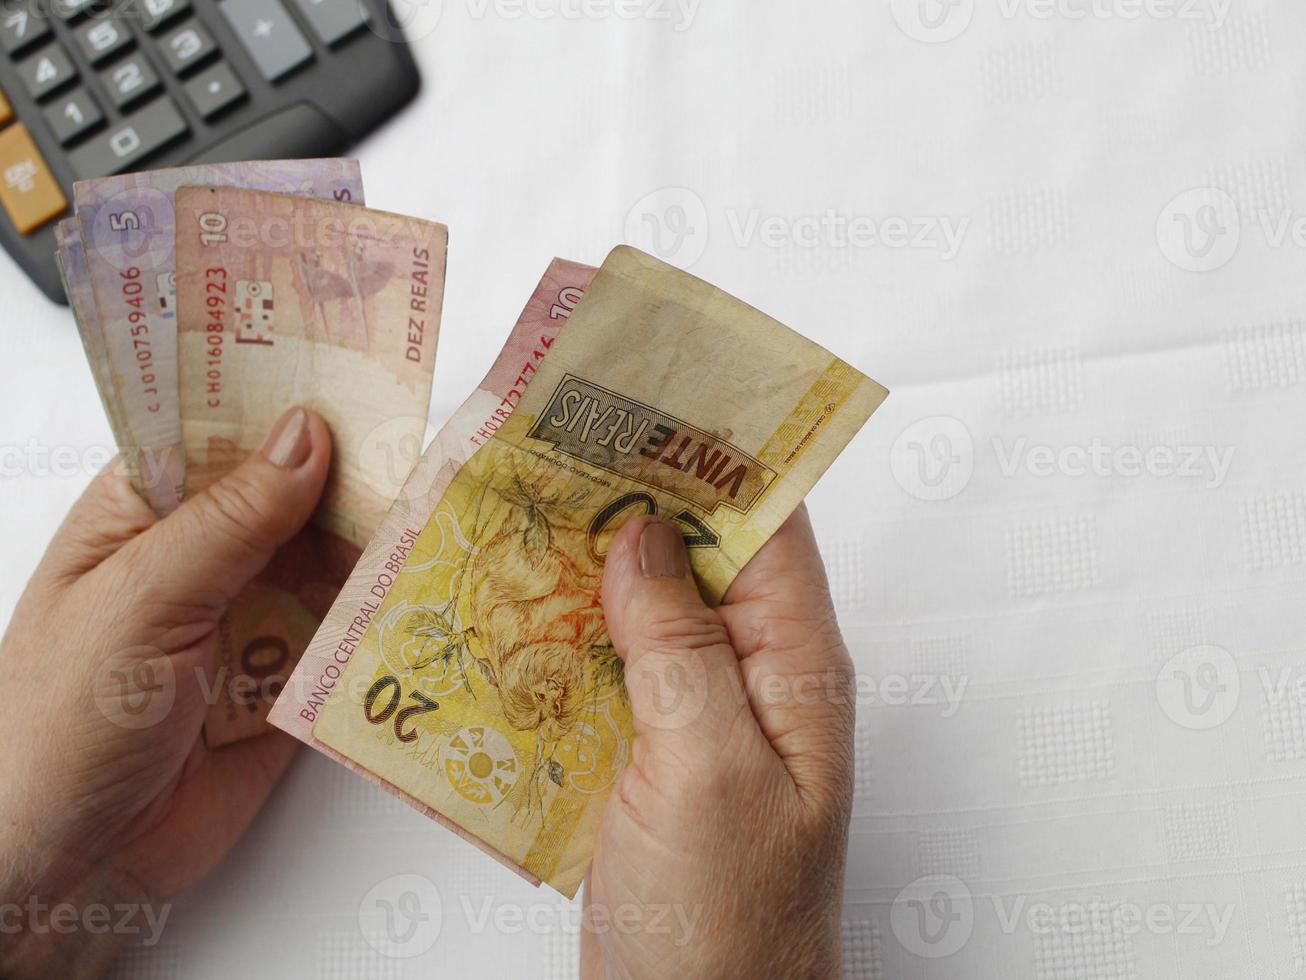 fotografering för ekonomi och finans teman med brasilianska pengar foto